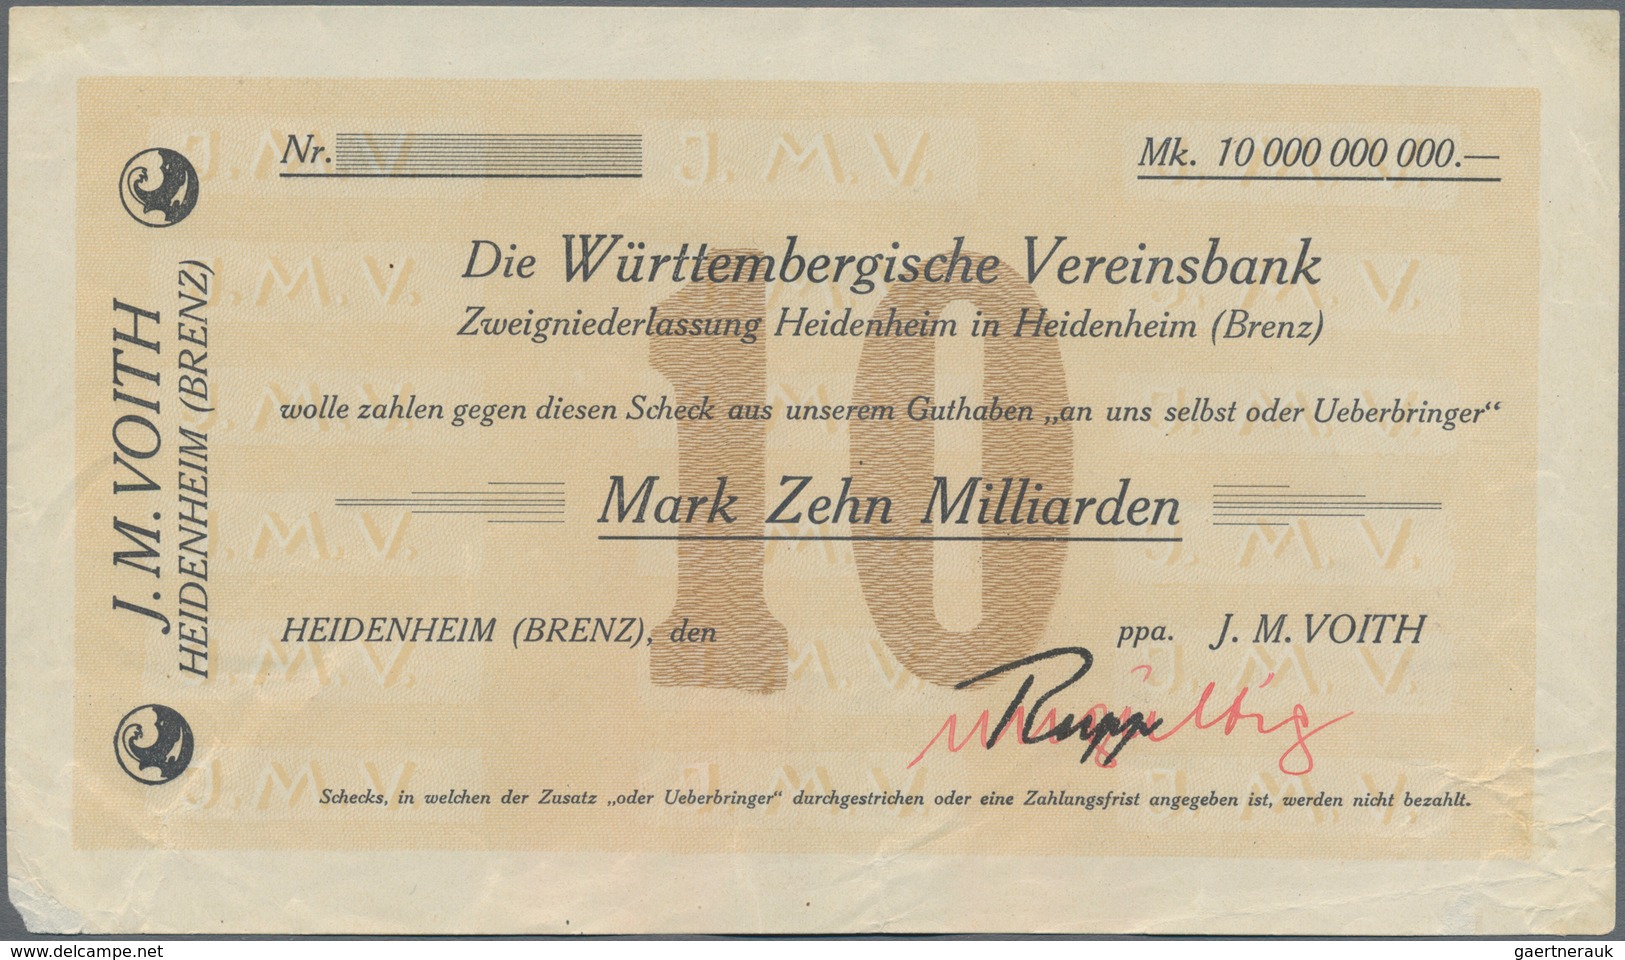 Deutschland - Notgeld - Württemberg: Heidenheim, J. M. Voith, 200 Tsd. Mark, 21.9.1923, 10 Mrd. Mark - Lokale Ausgaben